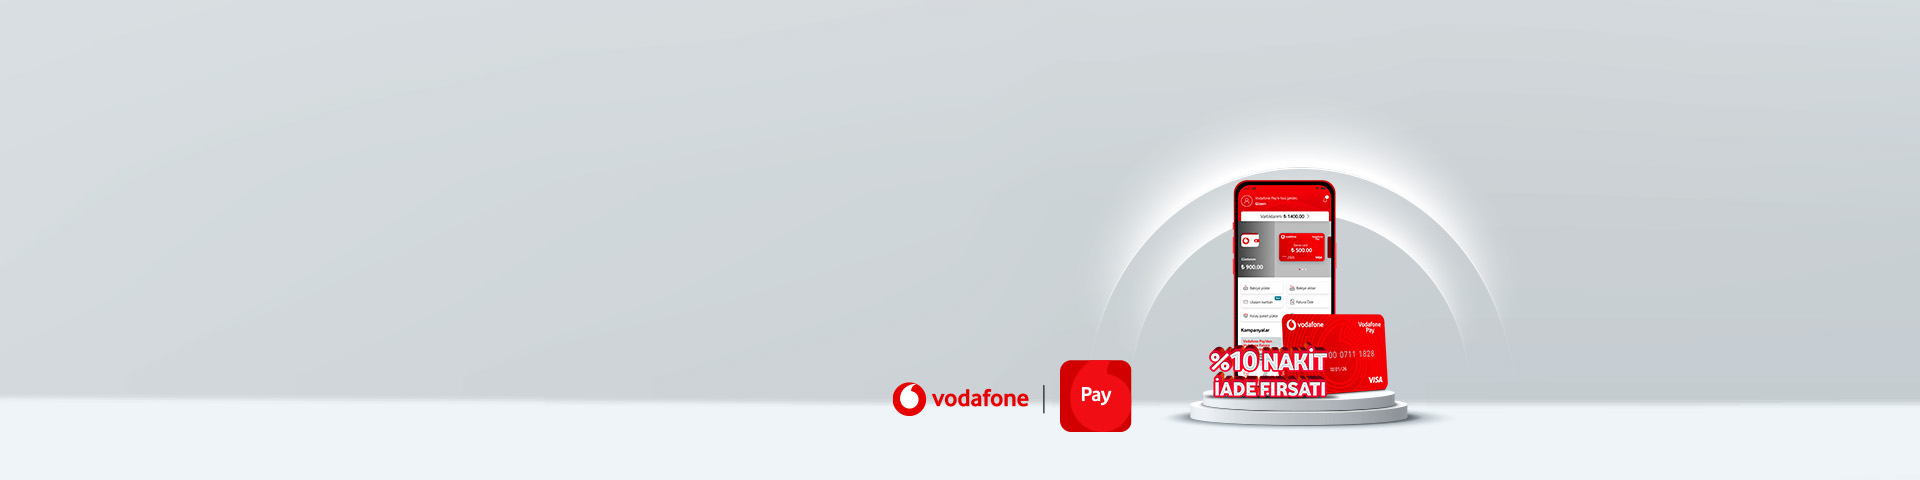 Vodafone Pay’den Kolay Paket alımlarında %10 nakit iade fırsatı!